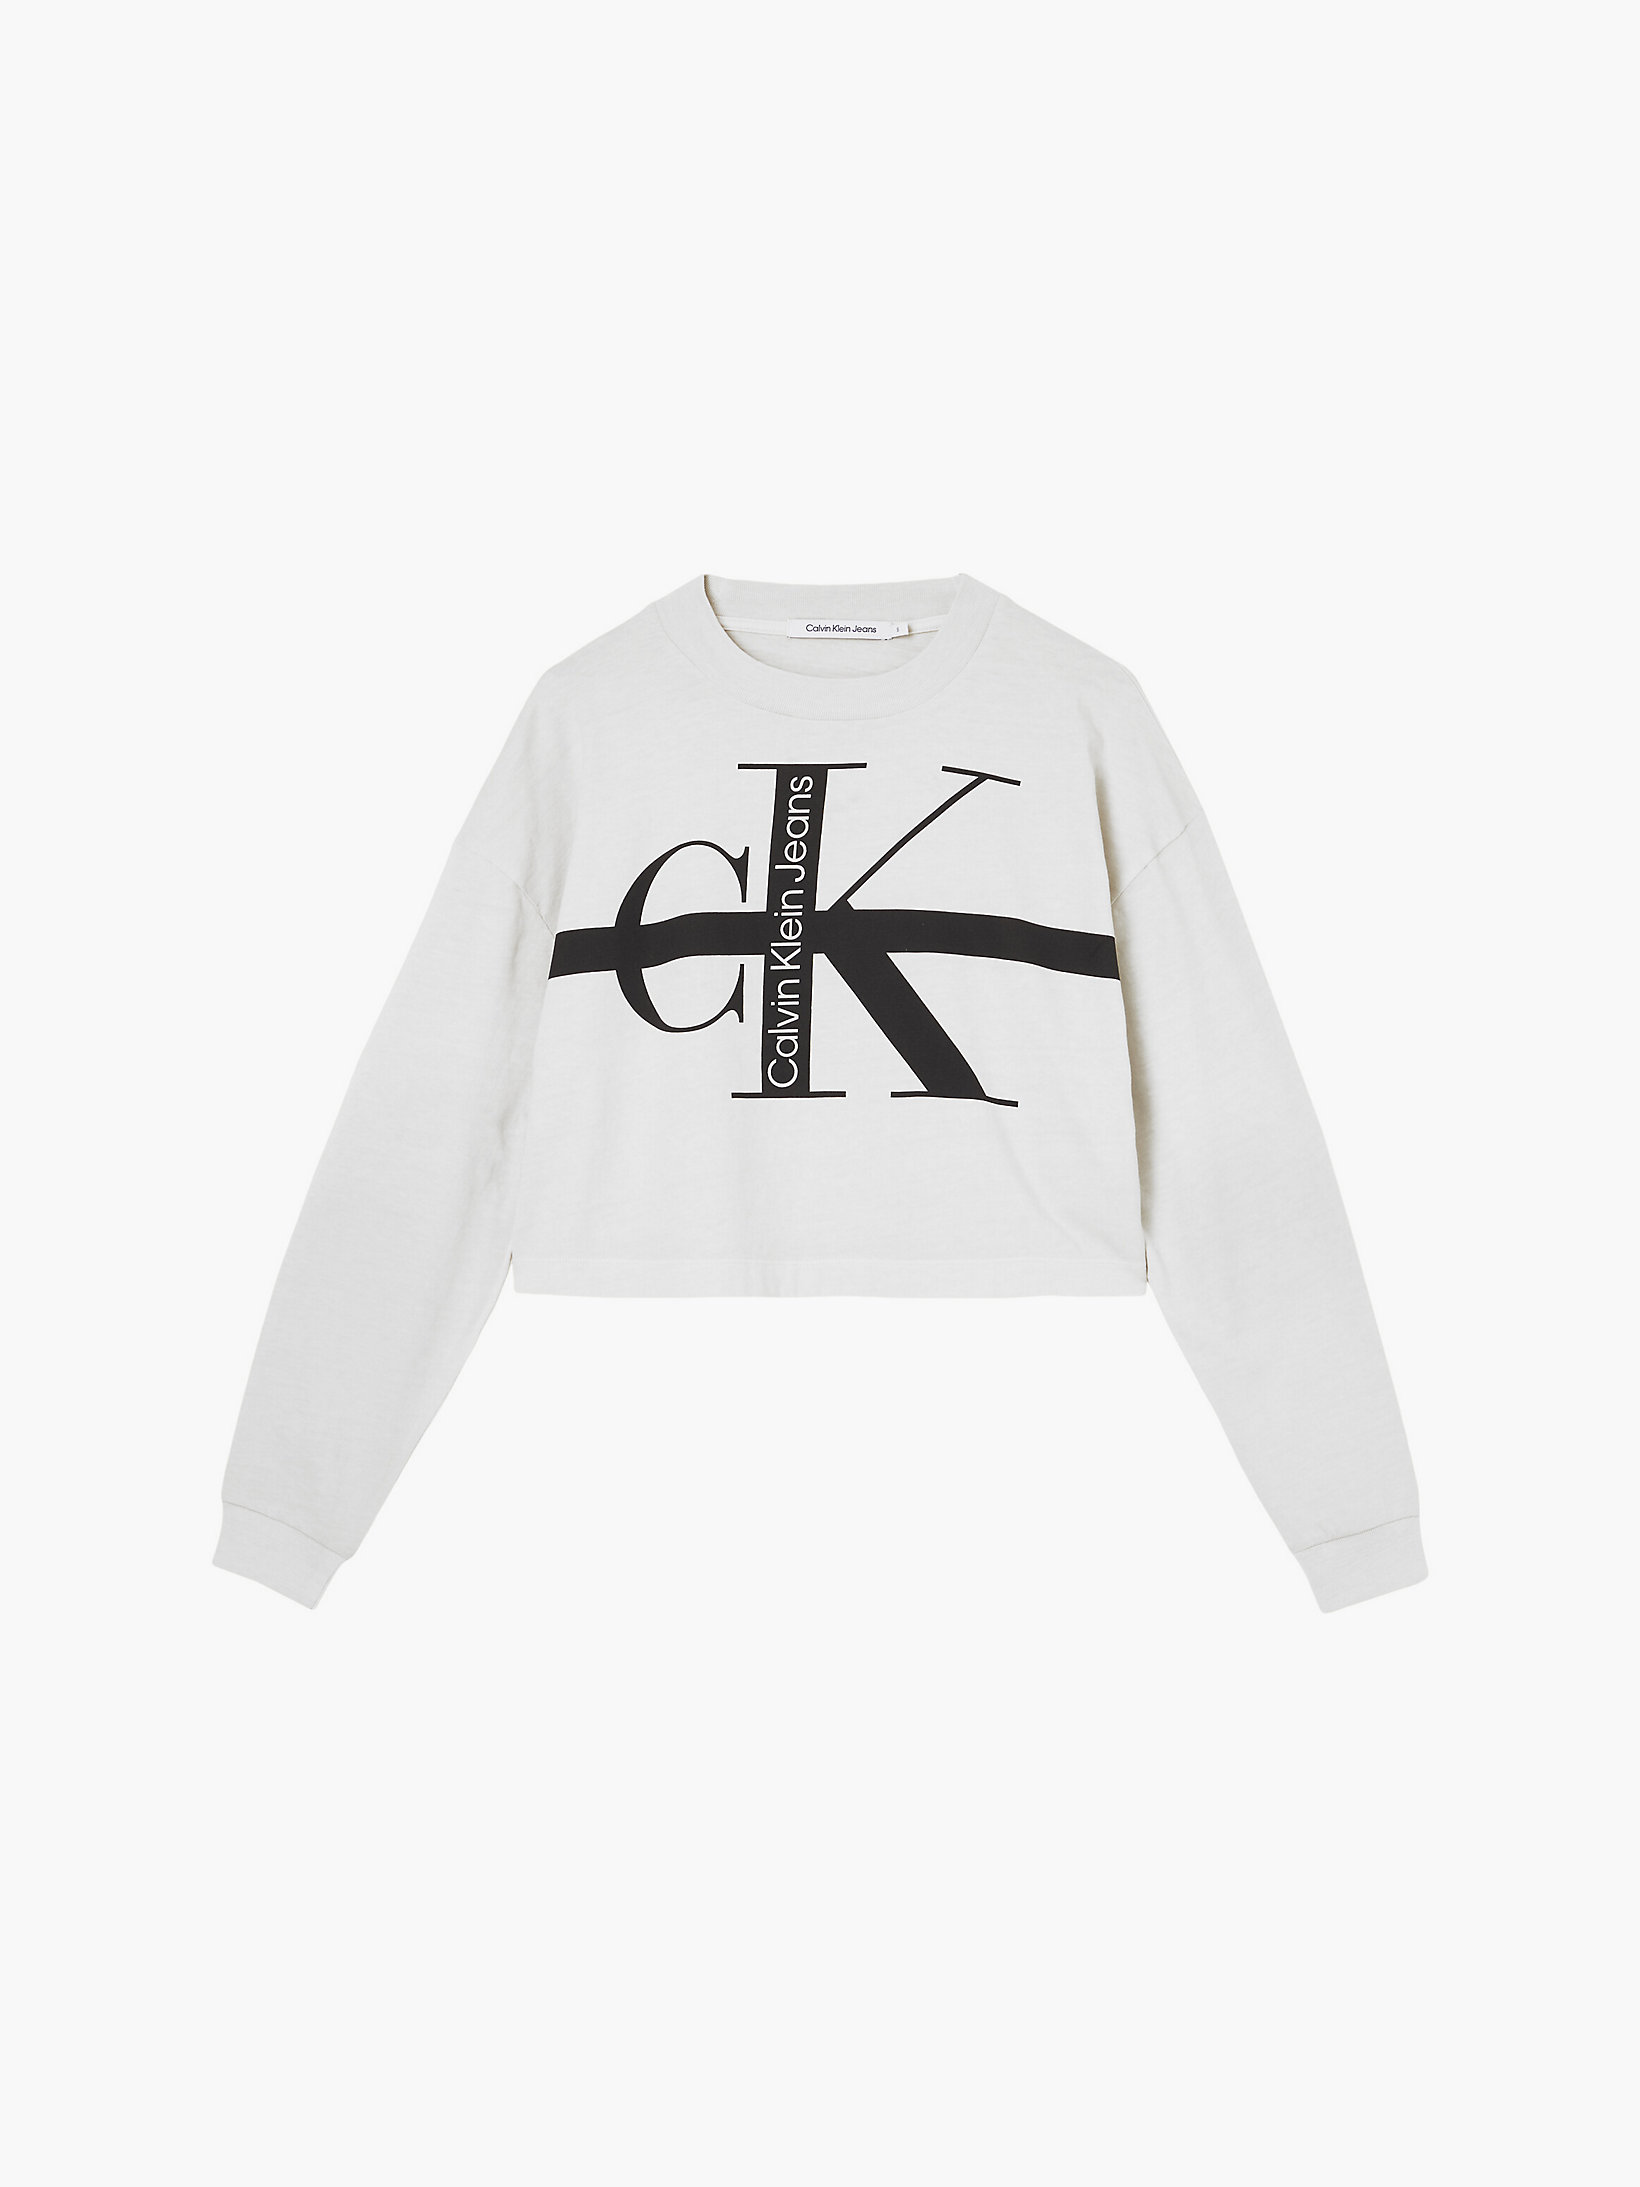 T-shirt con logo a maniche lunghe taglio relaxed Calvin Klein Donna Abbigliamento Top e t-shirt T-shirt T-shirt a maniche lunghe 